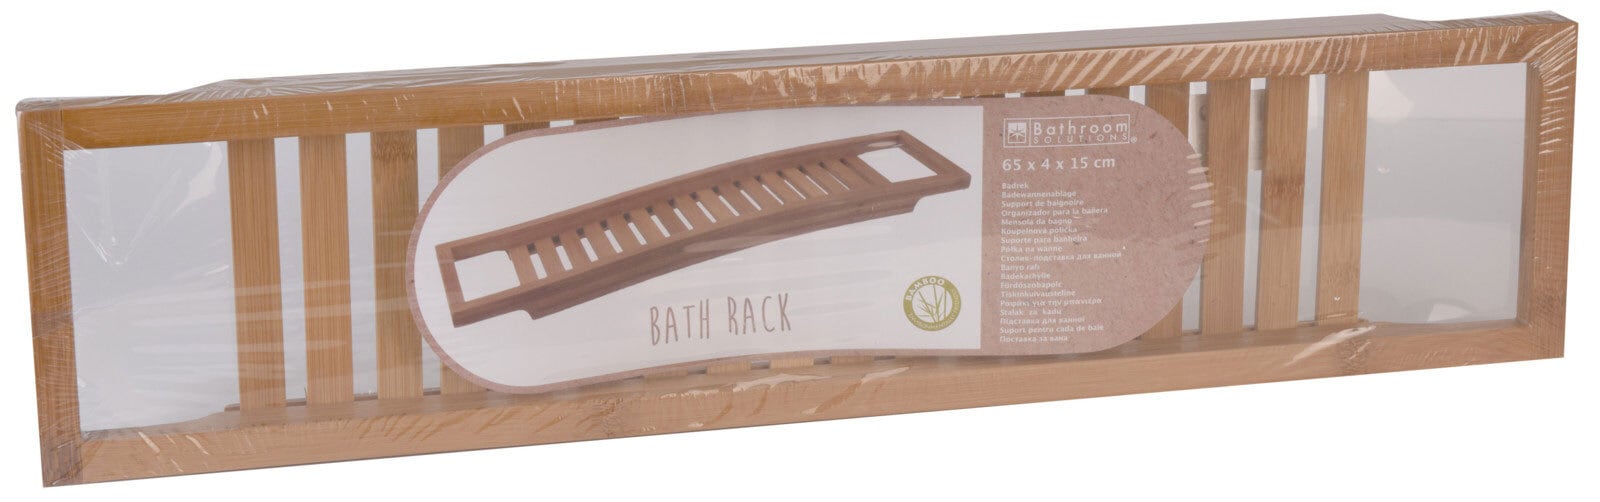 Ablage für Badewanne BATH RACK 64,5 cm Bambus